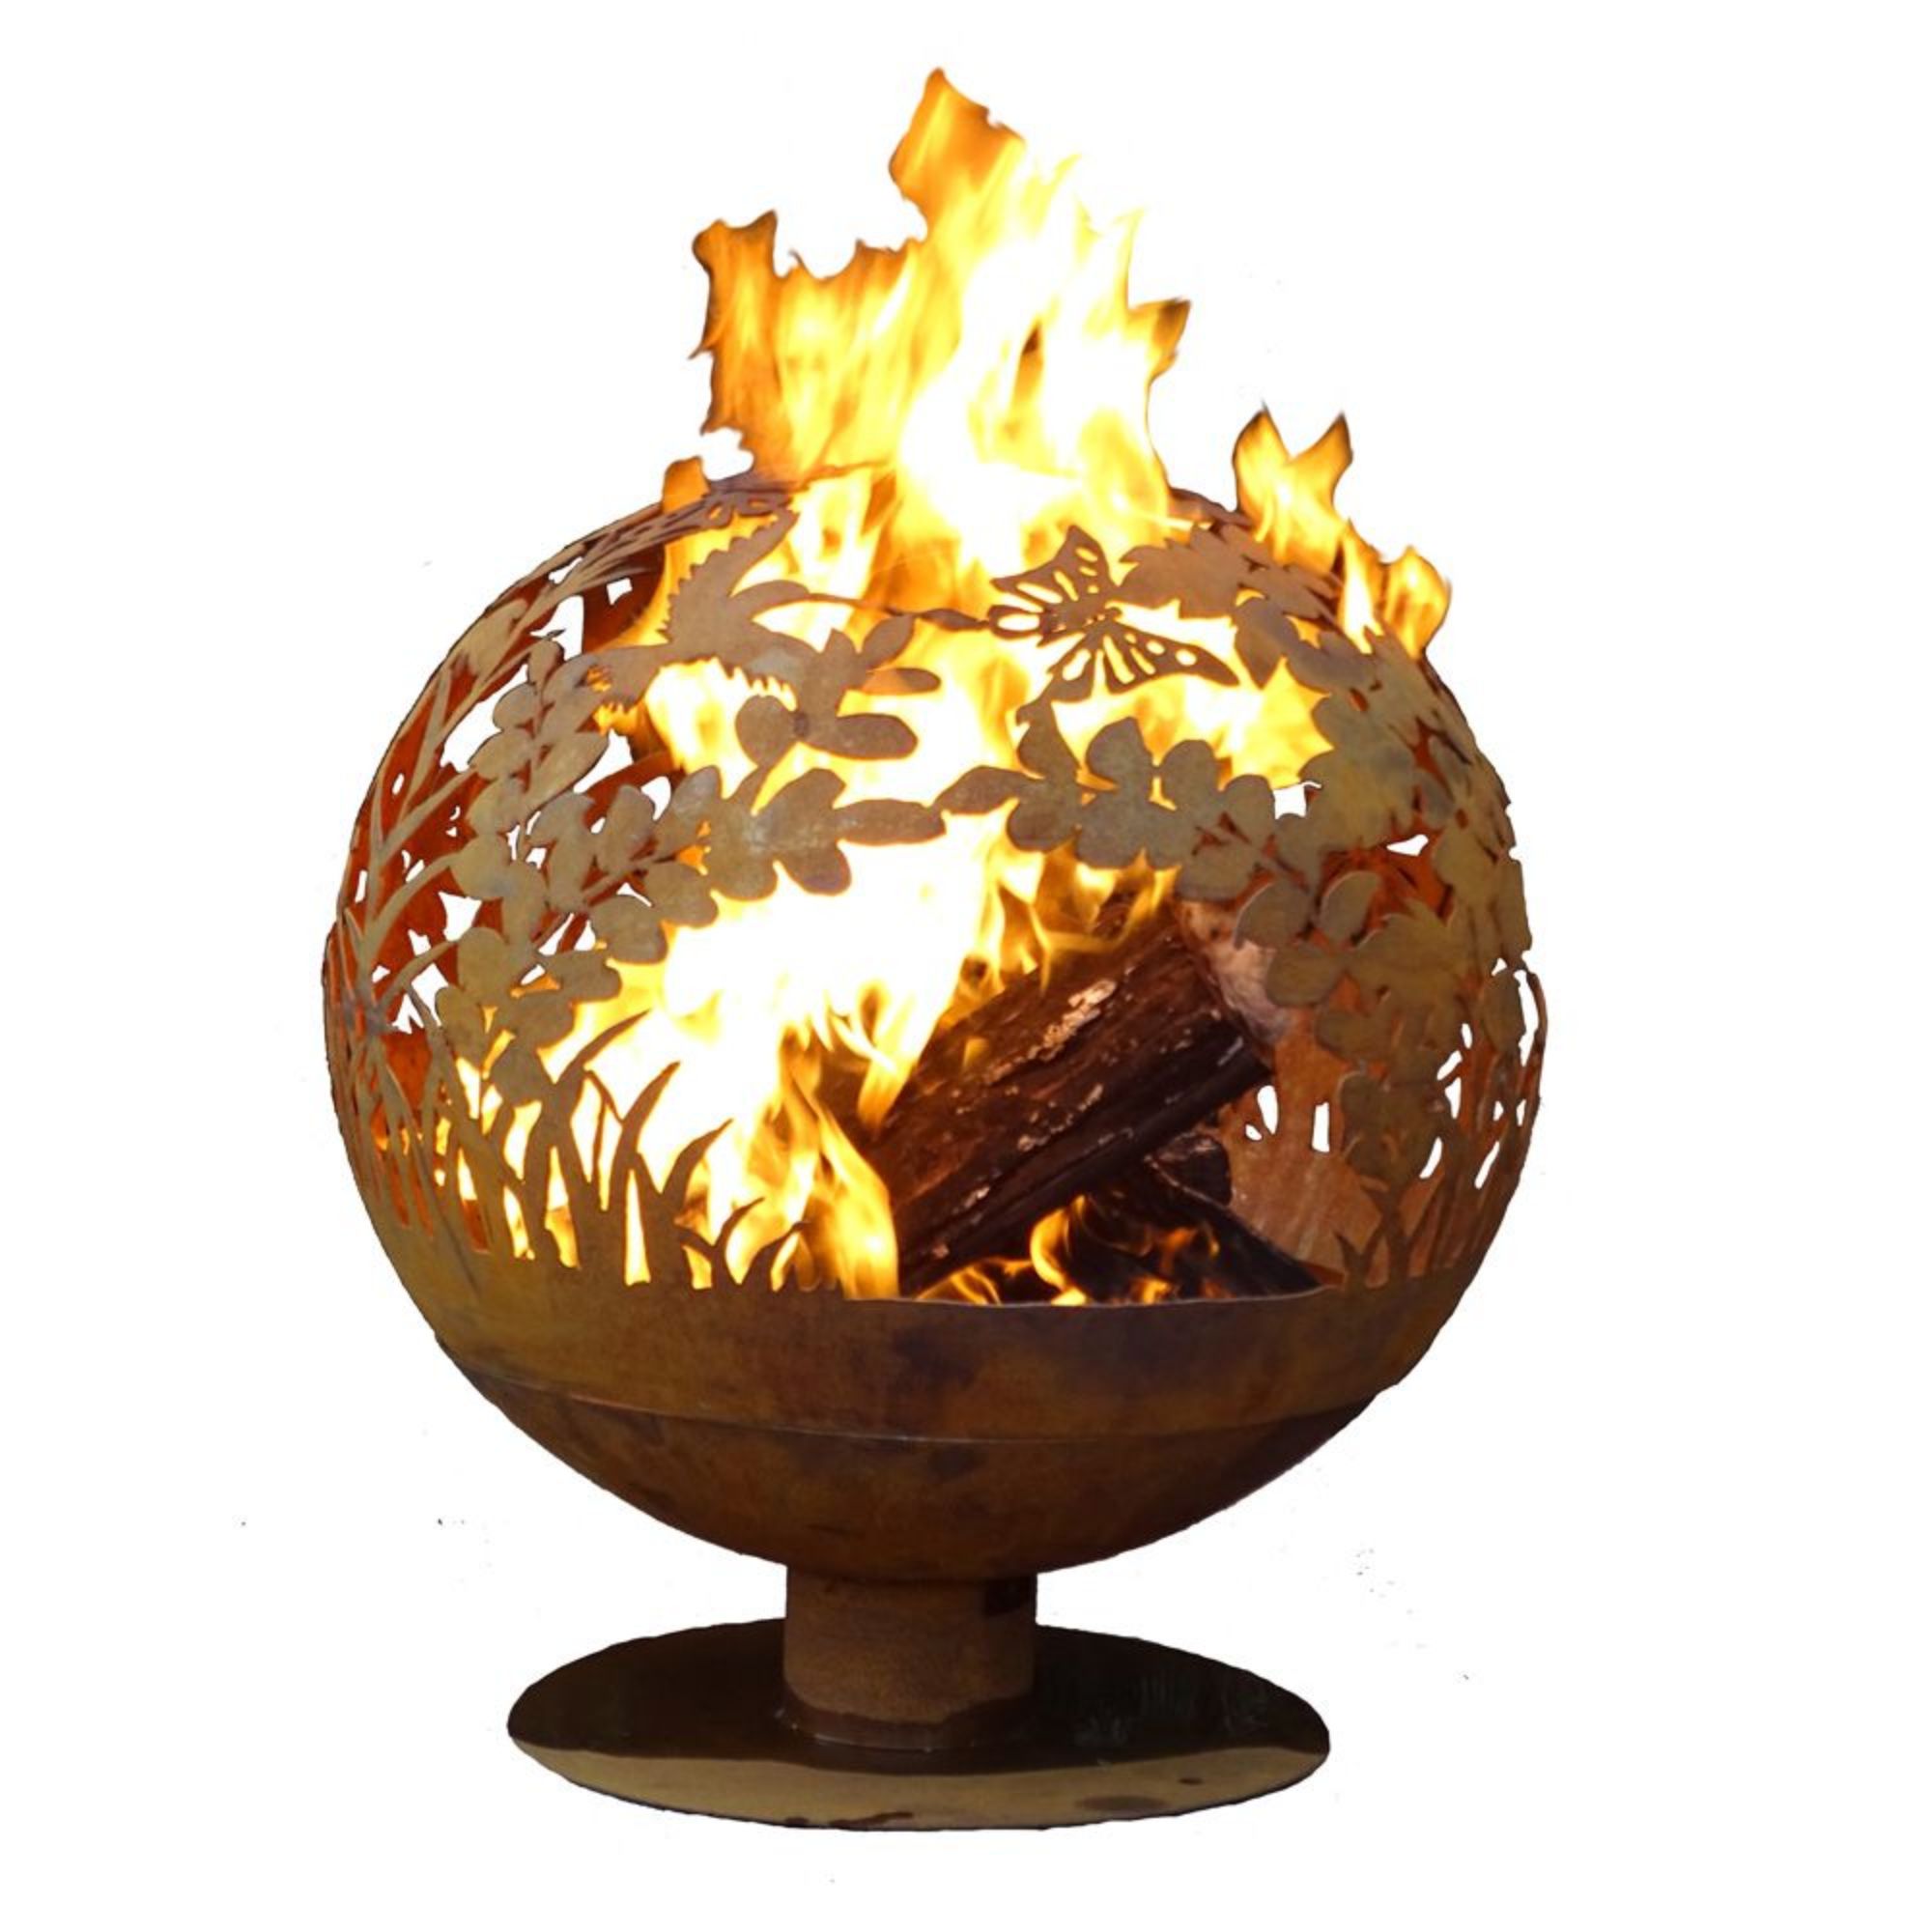 Esschert Design 28" Brown Rustic Finish Large Garden Outdoor Fire Sphere - image 1 of 2